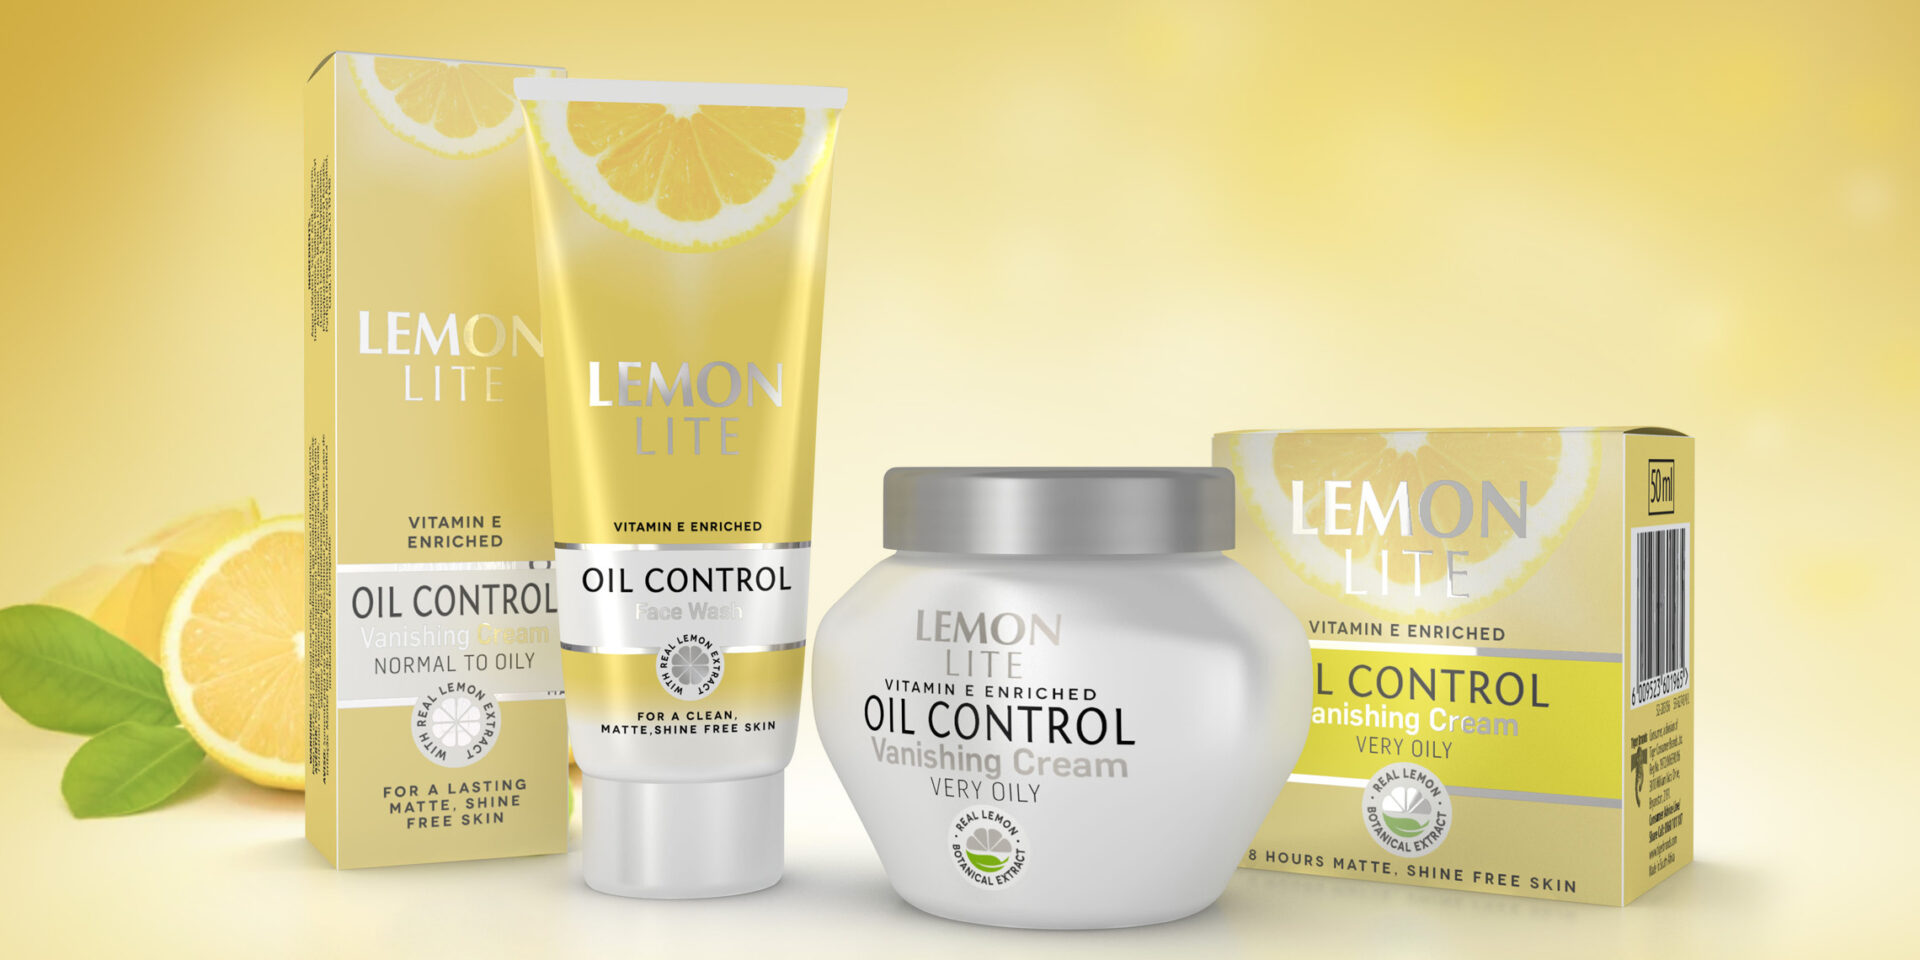 Lemon Lite skincare packaging design agency in South Africa Australia UAE USA Dubai